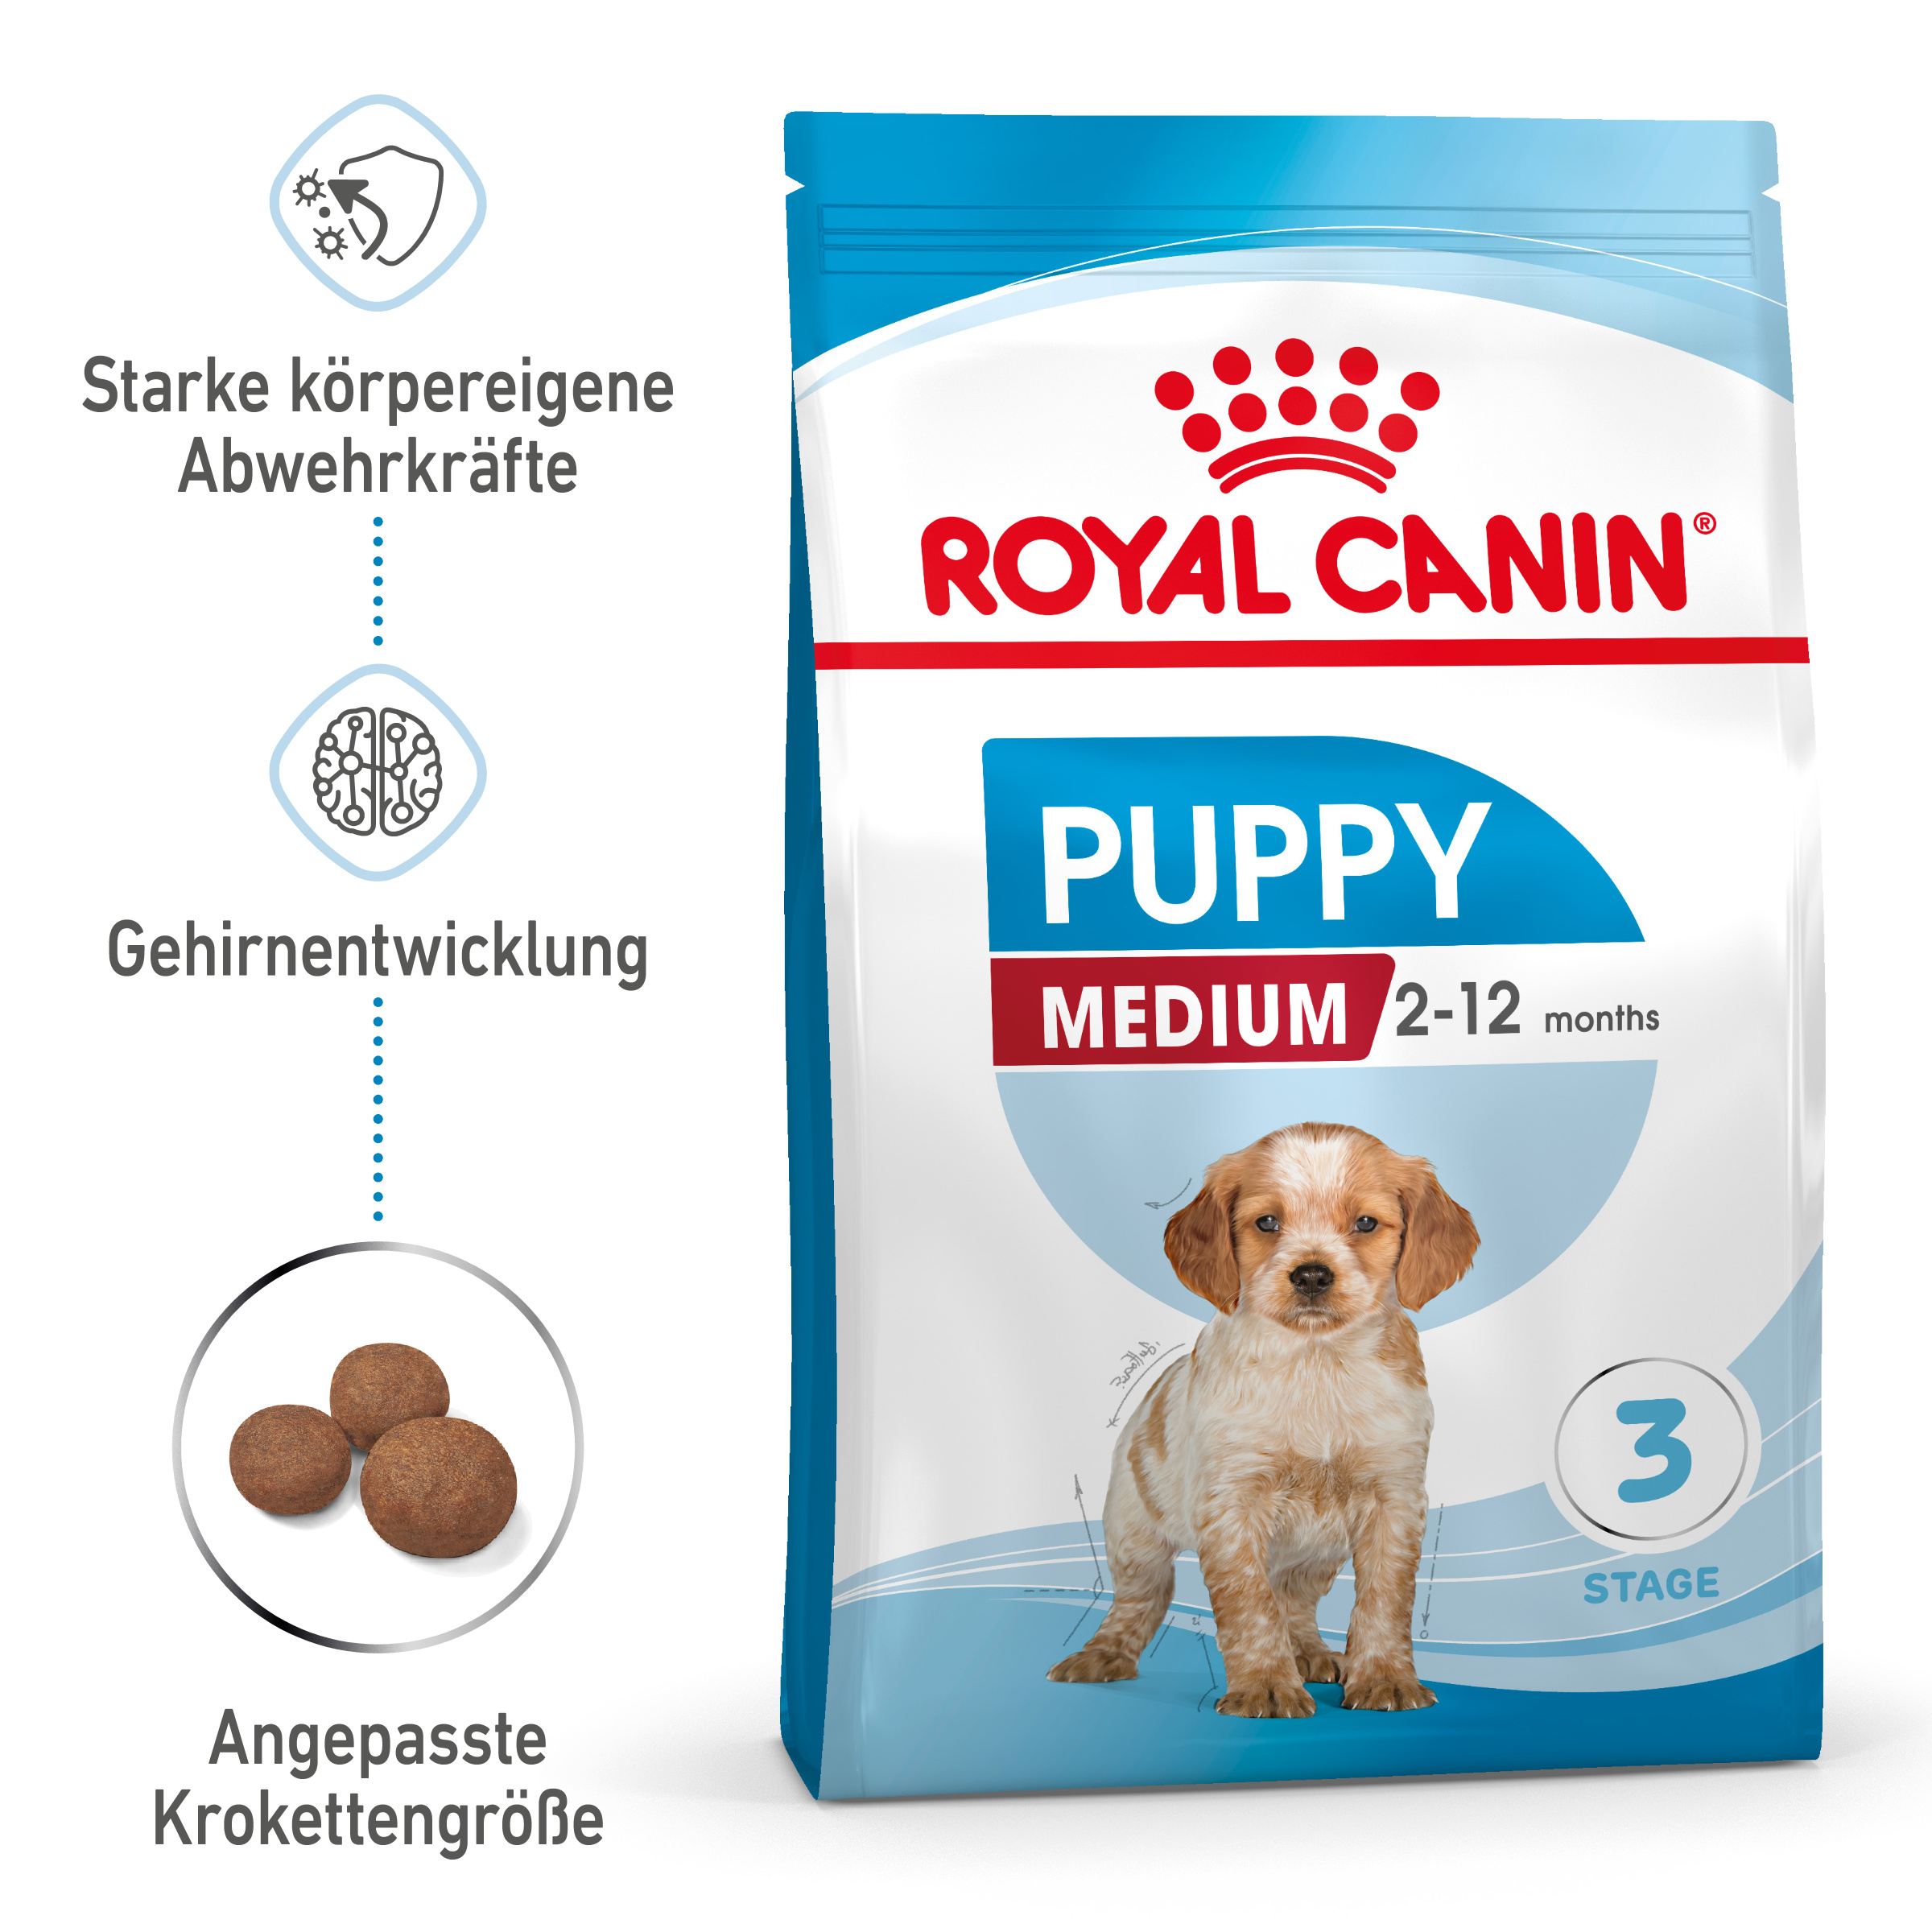 ROYAL CANIN MEDIUM Puppy Trockenfutter für Welpen mittelgroßer Hunderassen 